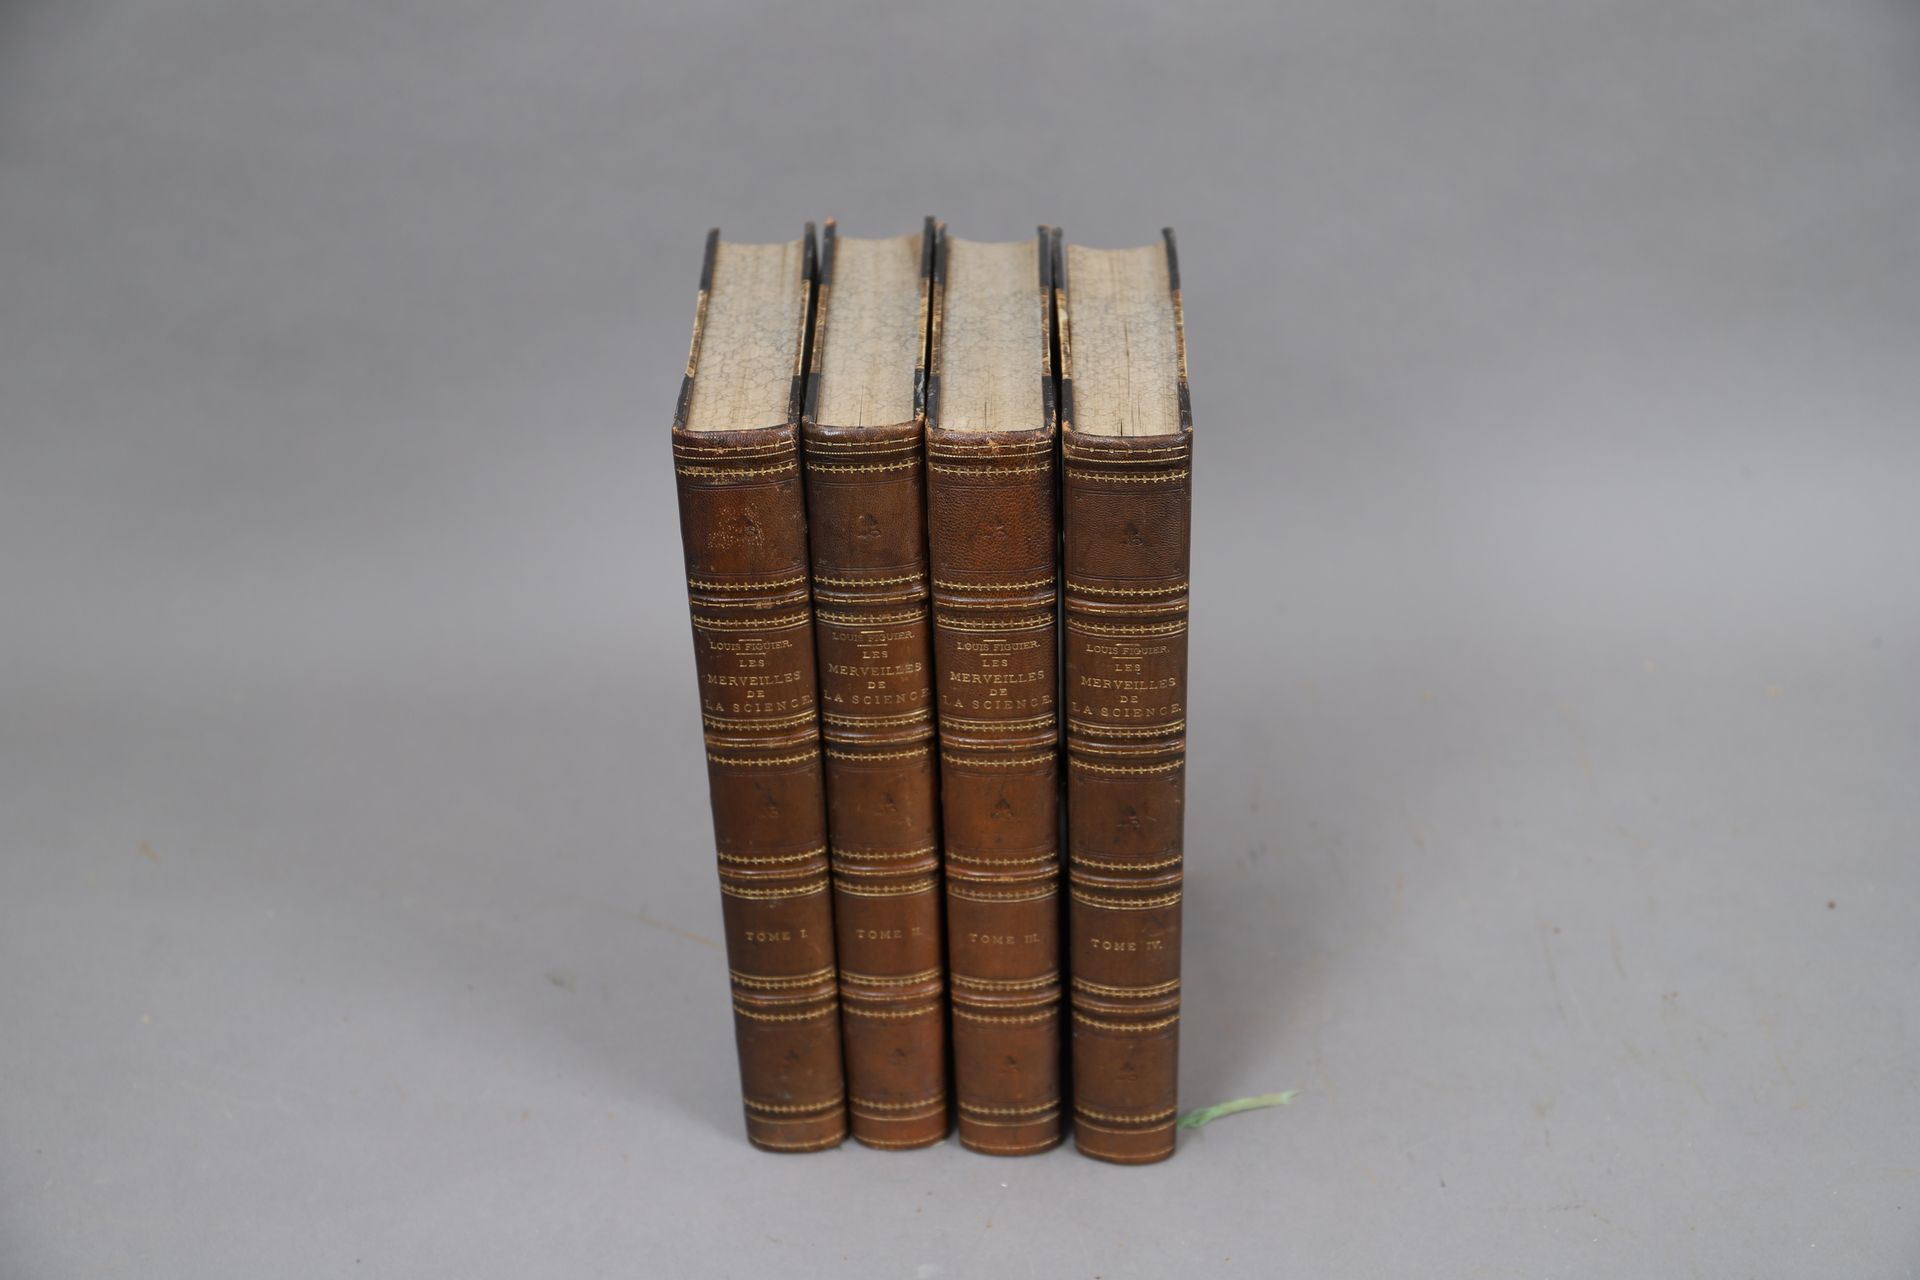 Null FIGUIER - DIE WUNDER DER WISSENSCHAFT.

4 gebundene Bände. (1870).